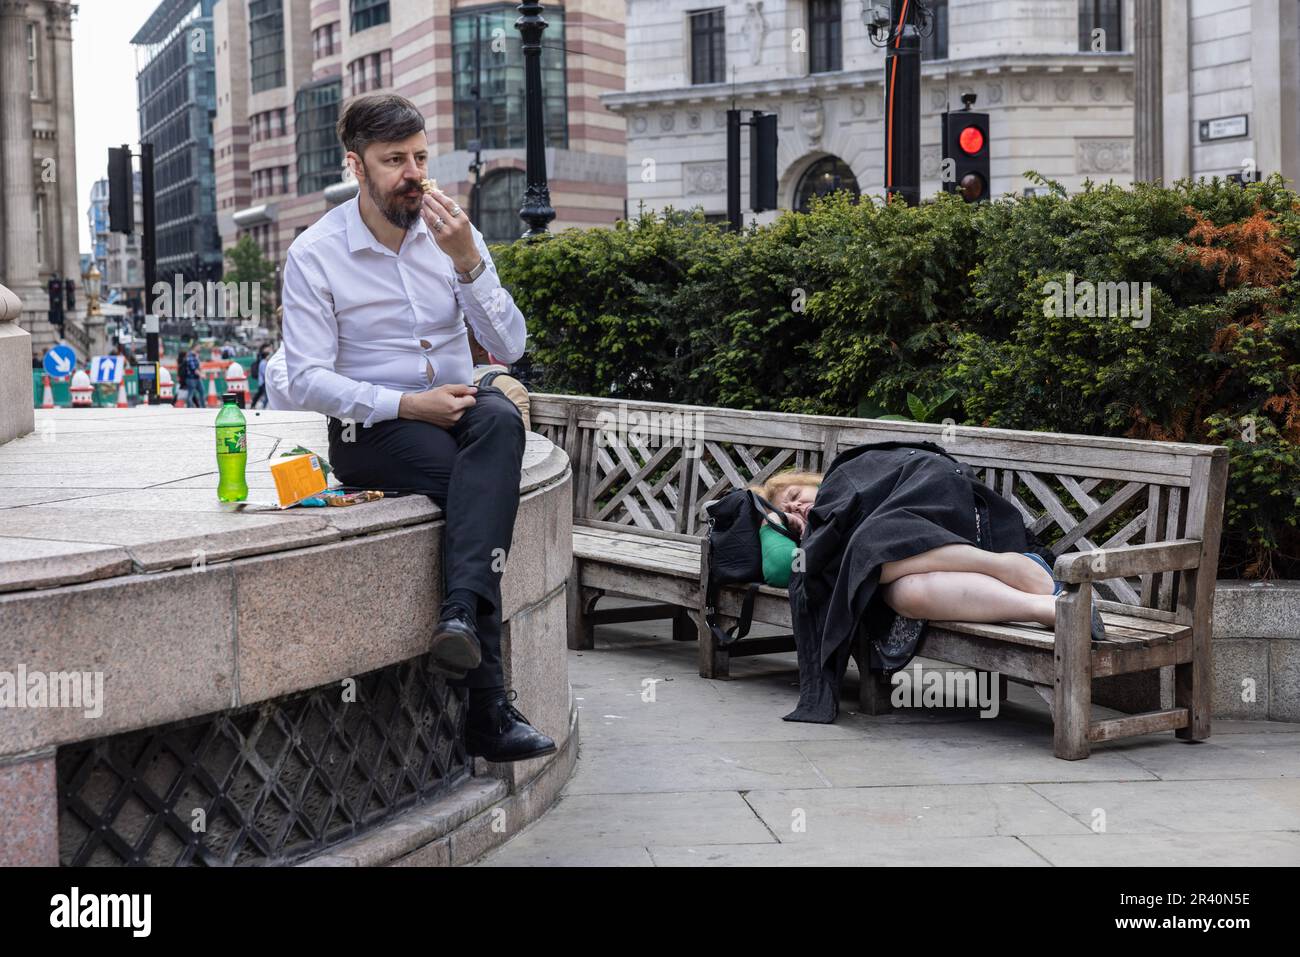 Stadtarbeiter isst sein Mittagessen, während eine Frau auf einer Bank in der Nähe der Royal Exchange, City of London, England, Großbritannien, schläft Stockfoto